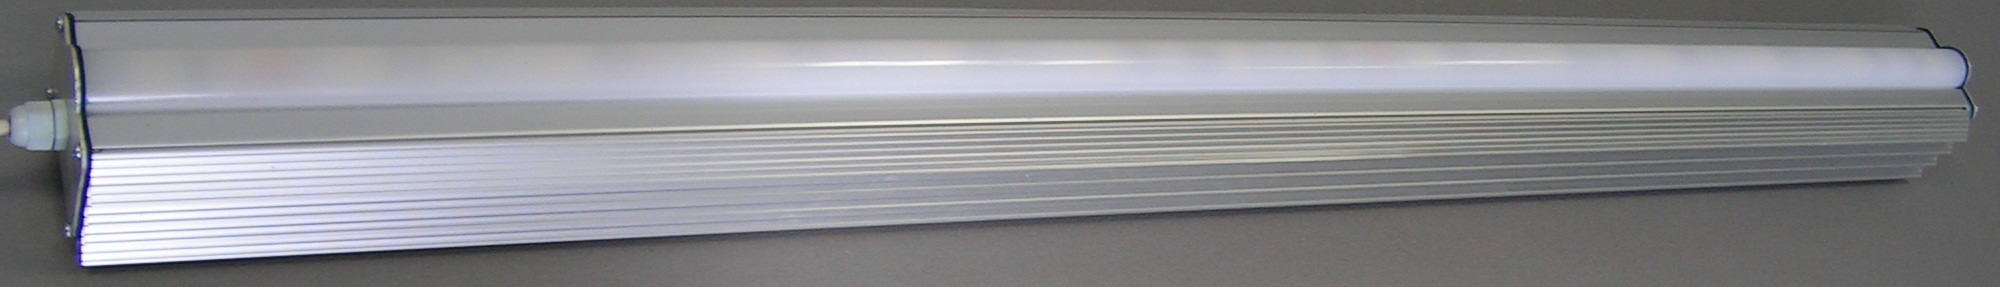 Picture of fixture LED 100L3x50Du